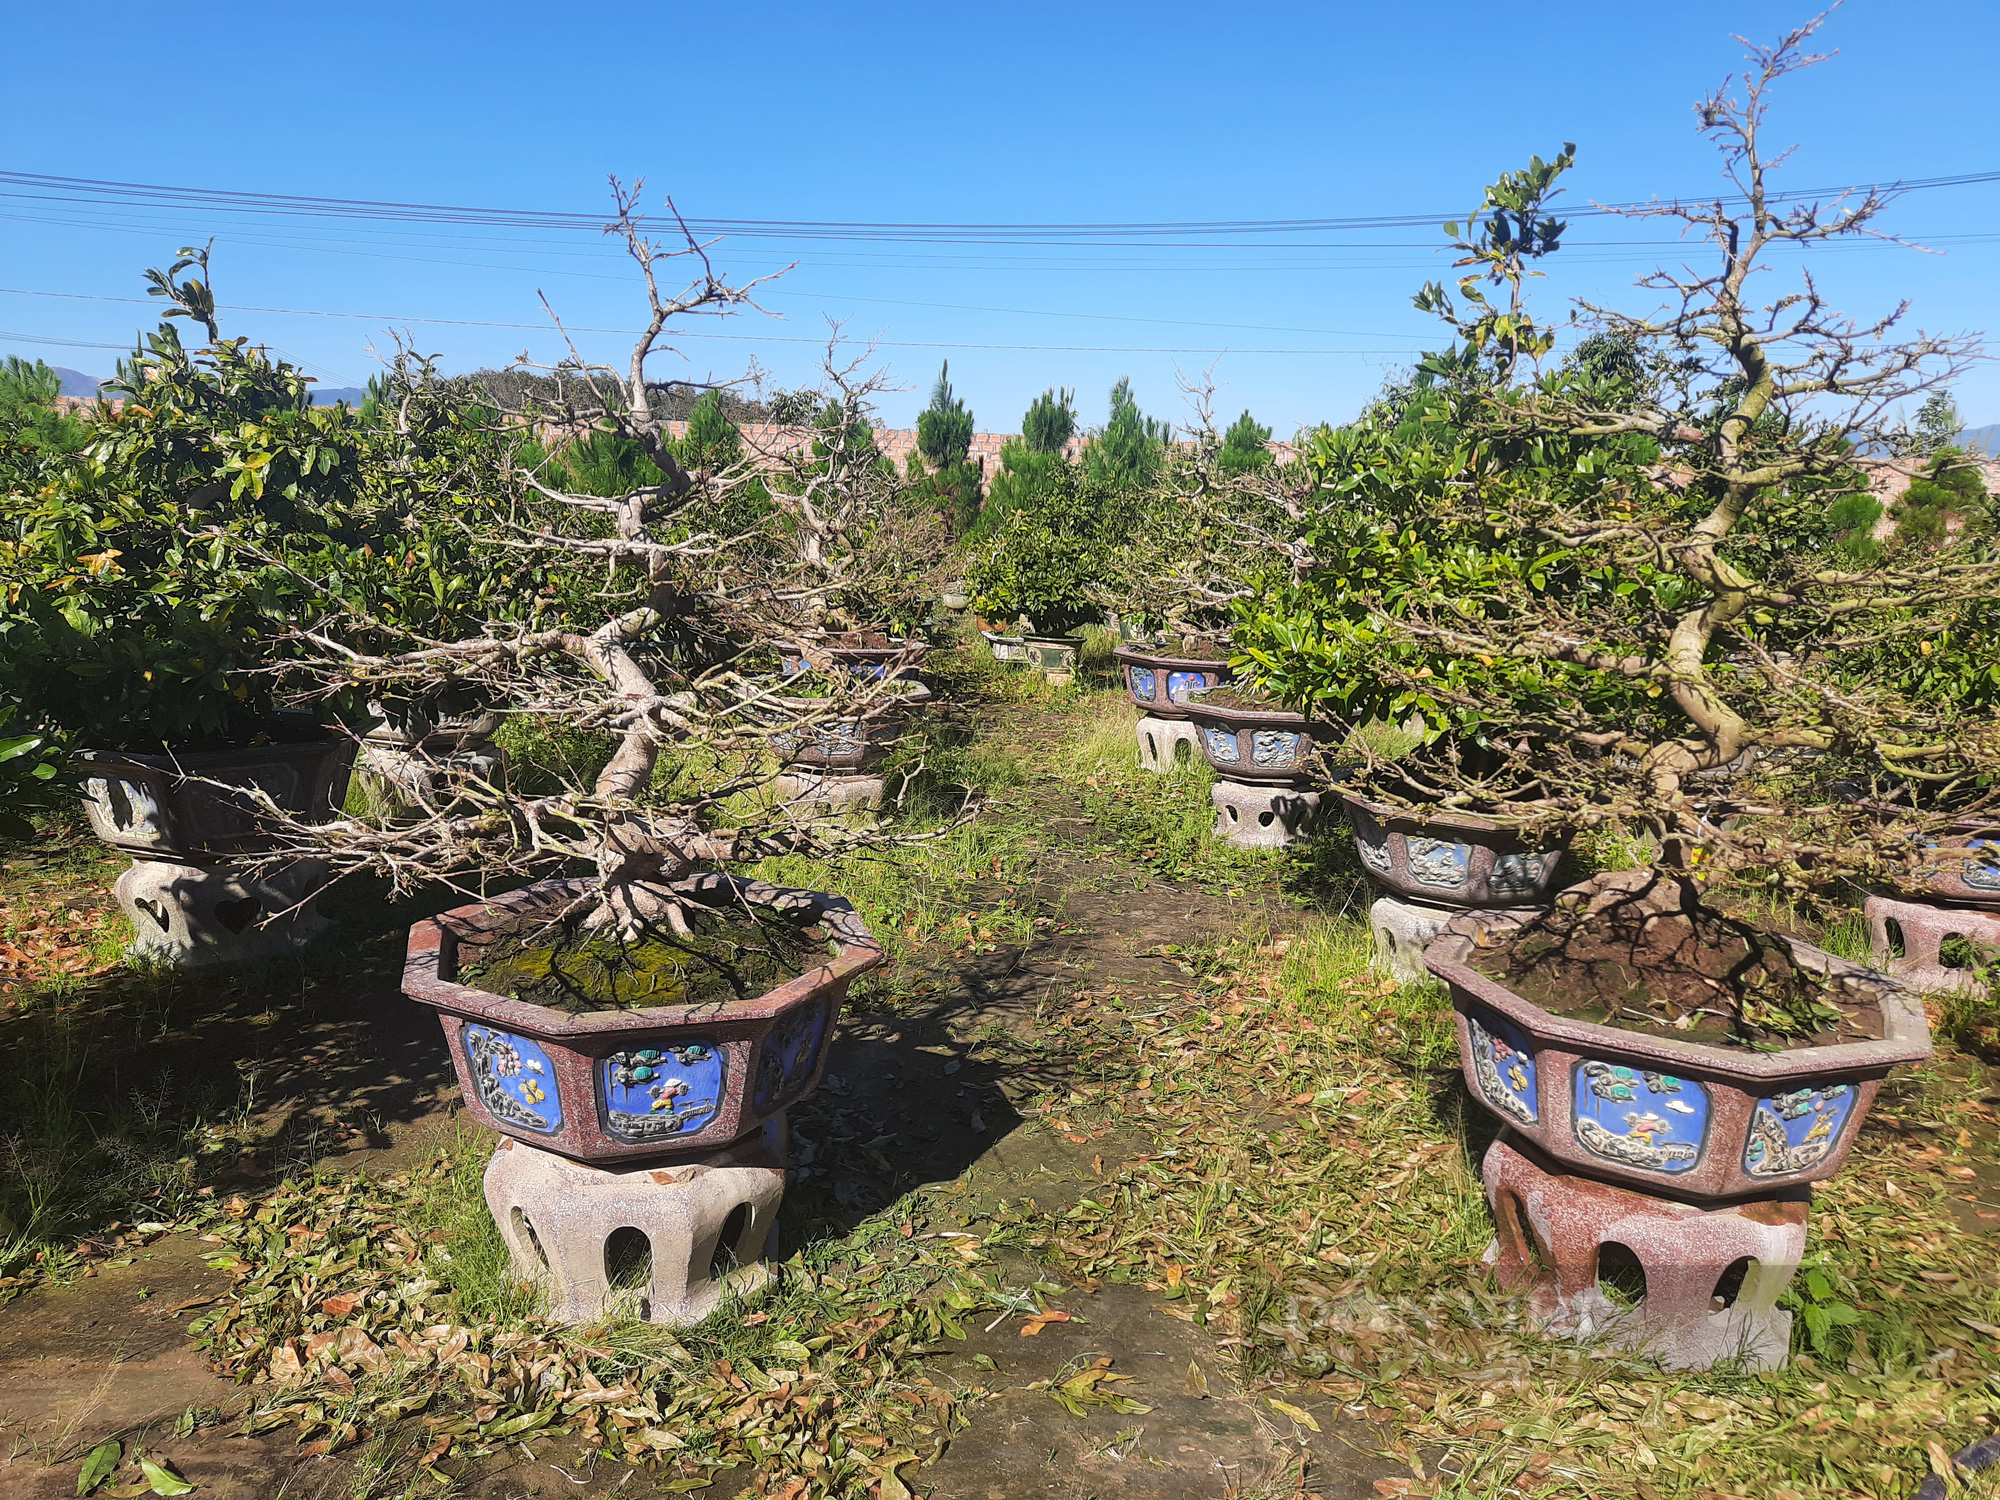 Độc đáo vườn mai ở Kon Tum: Mai quý hàng trăm triệu chỉ cho thuê ngày Tết chứ không bán - Ảnh 2.